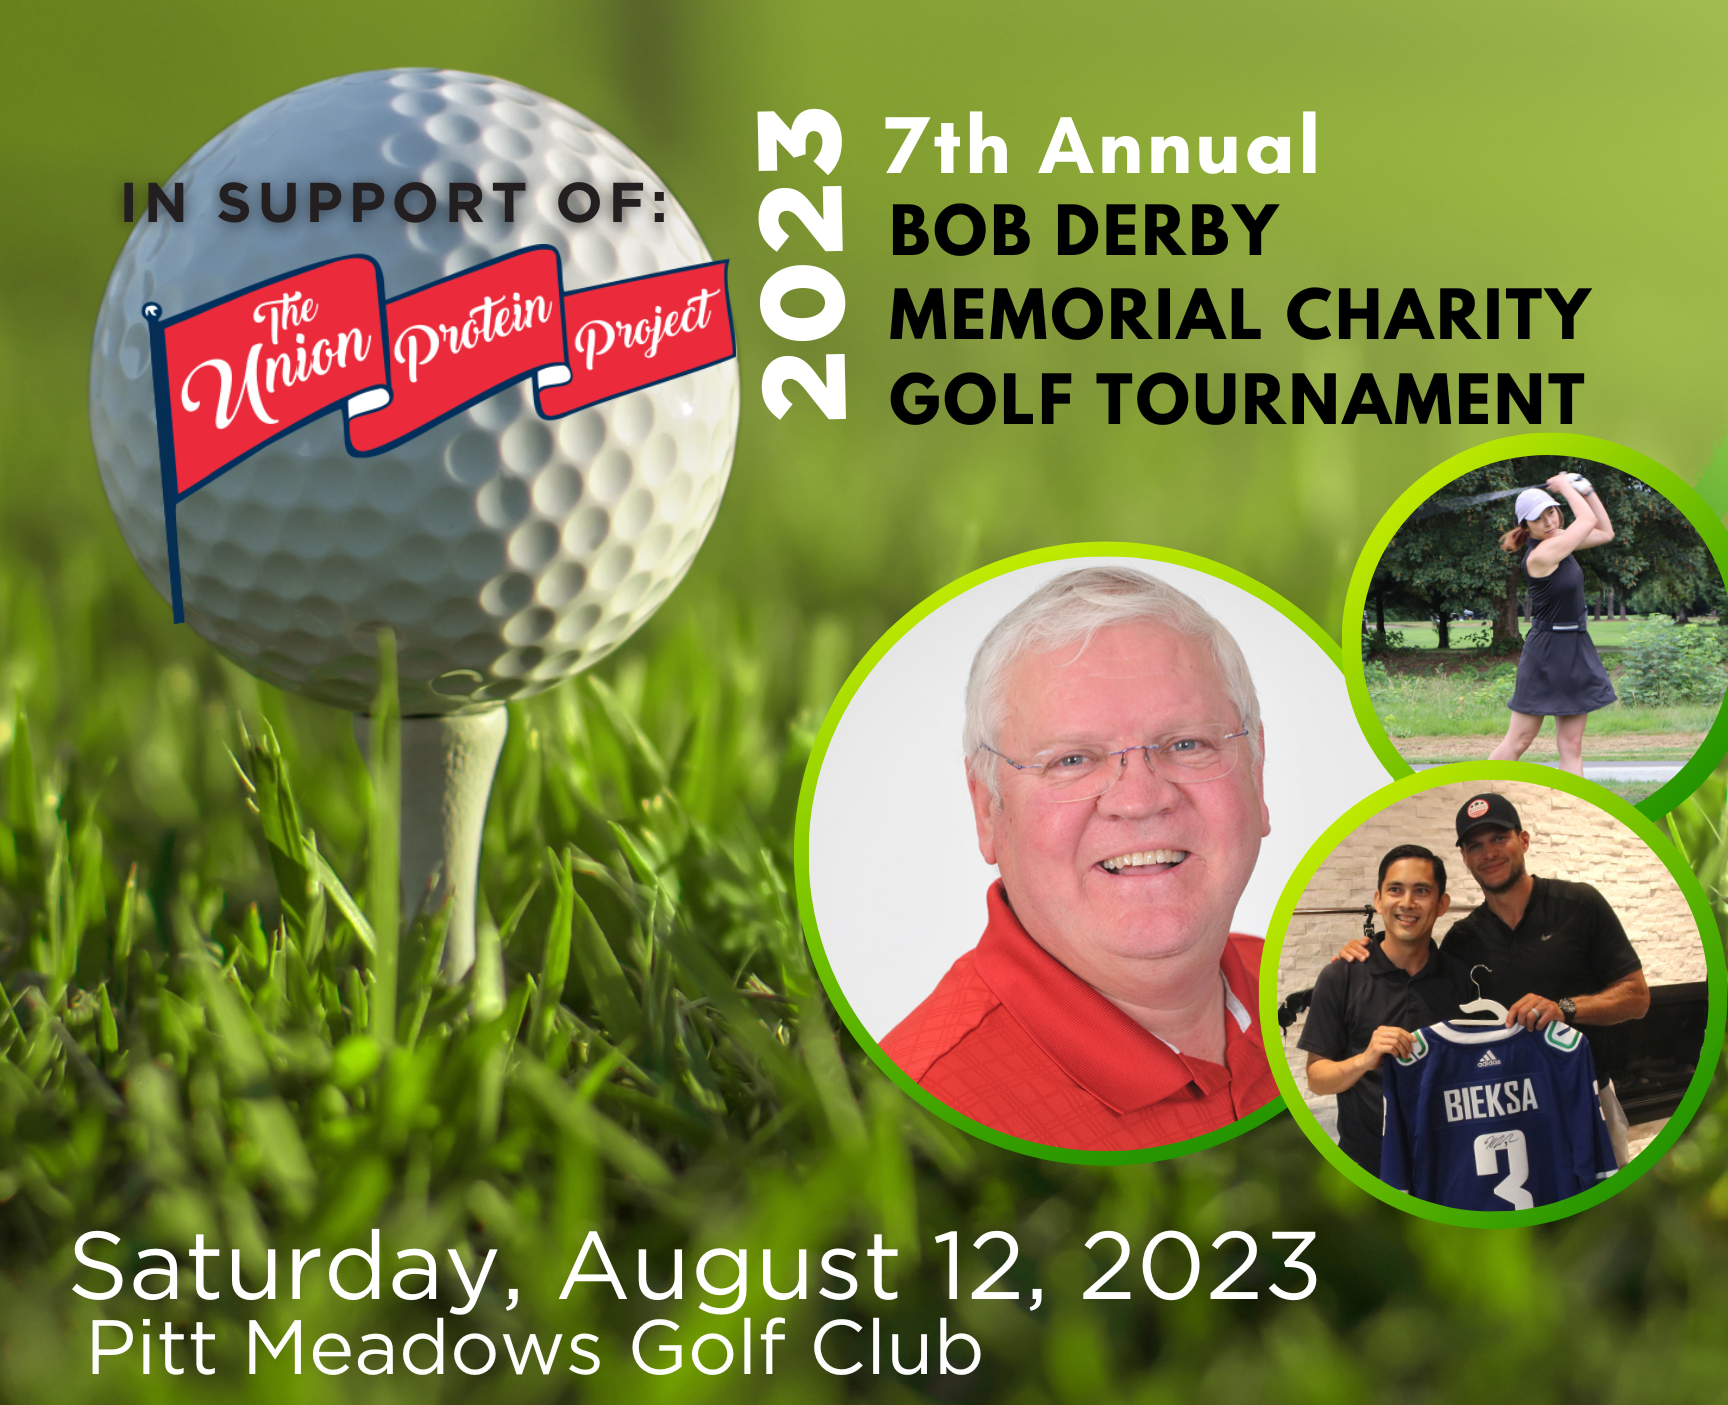 2023 7th Annual Bob Derby Memorial Charity Golf Tournament Saturday August 12, 2023 Pitt Meadows Golf Club